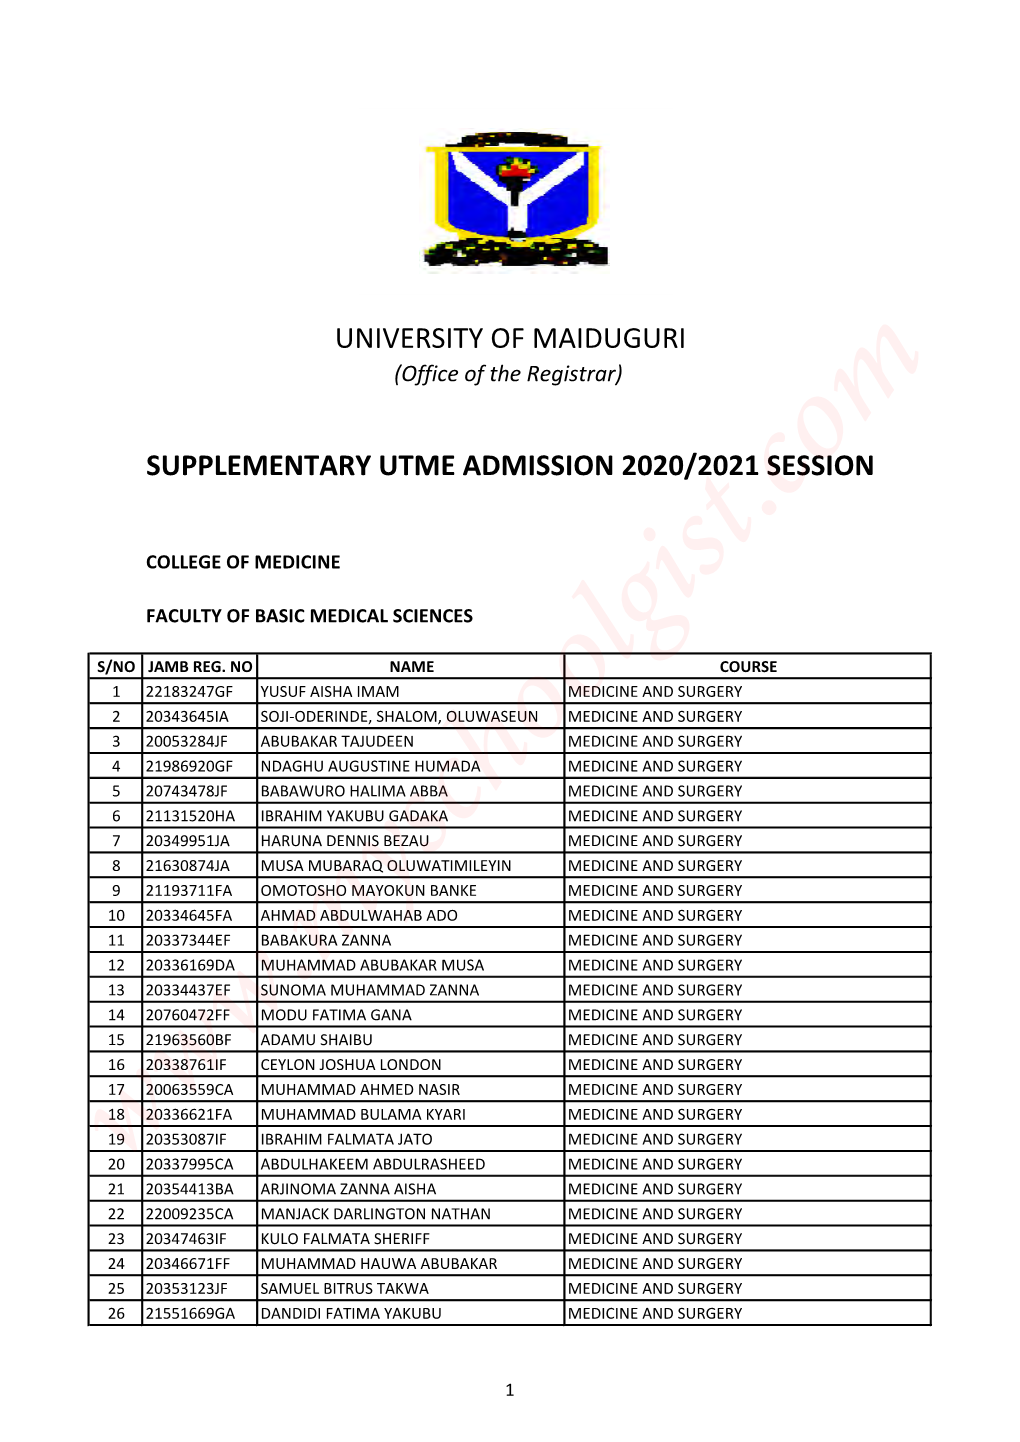 UNIMAID Supplementary UTME Admission List